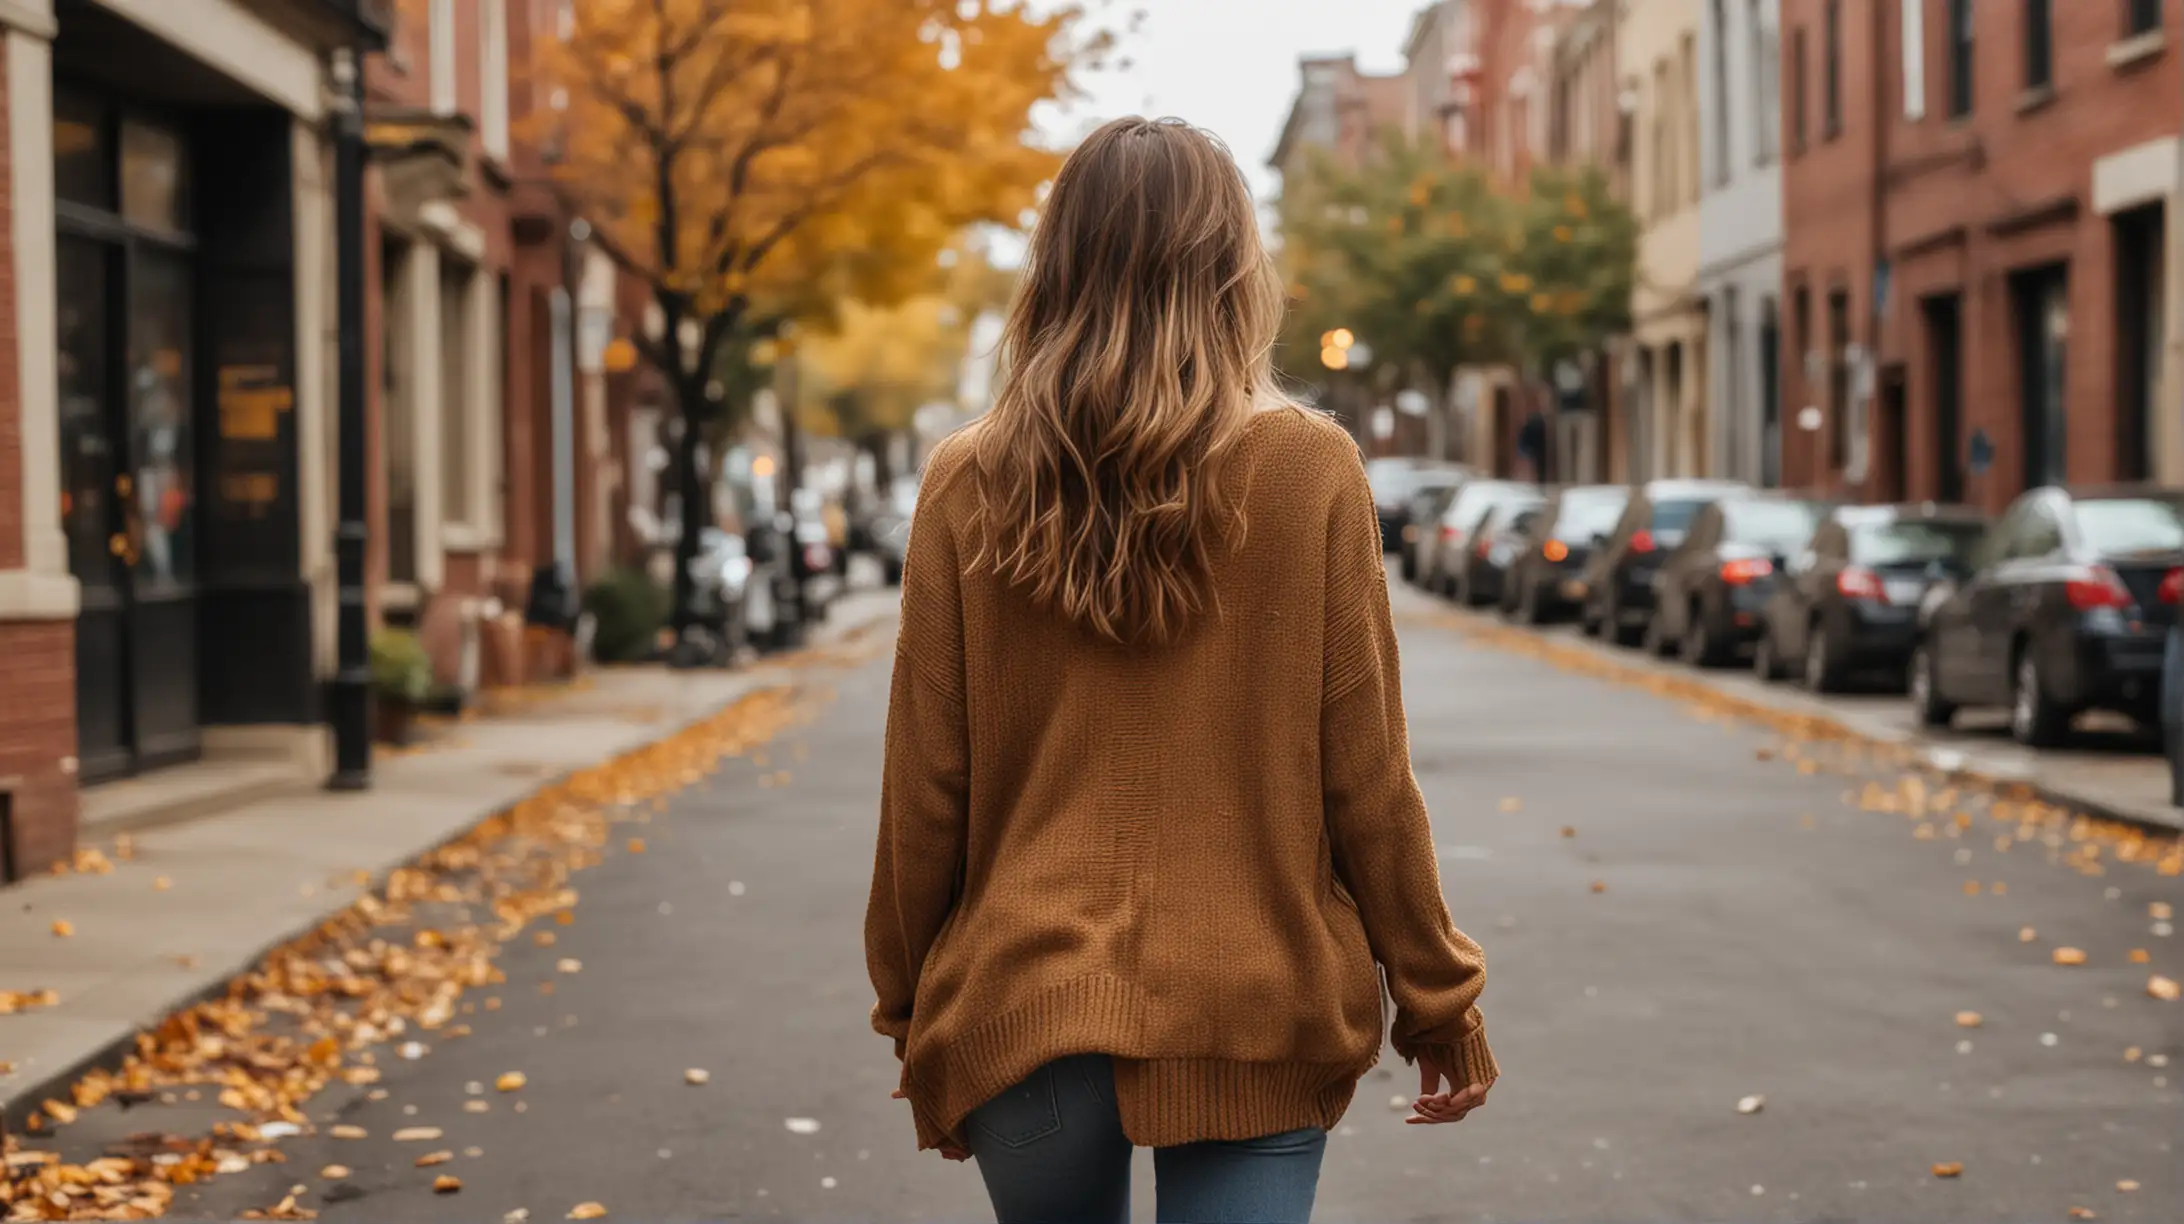 一个年轻美国女性的背影照片，full-body photography，穿秋装，漫步在街道上